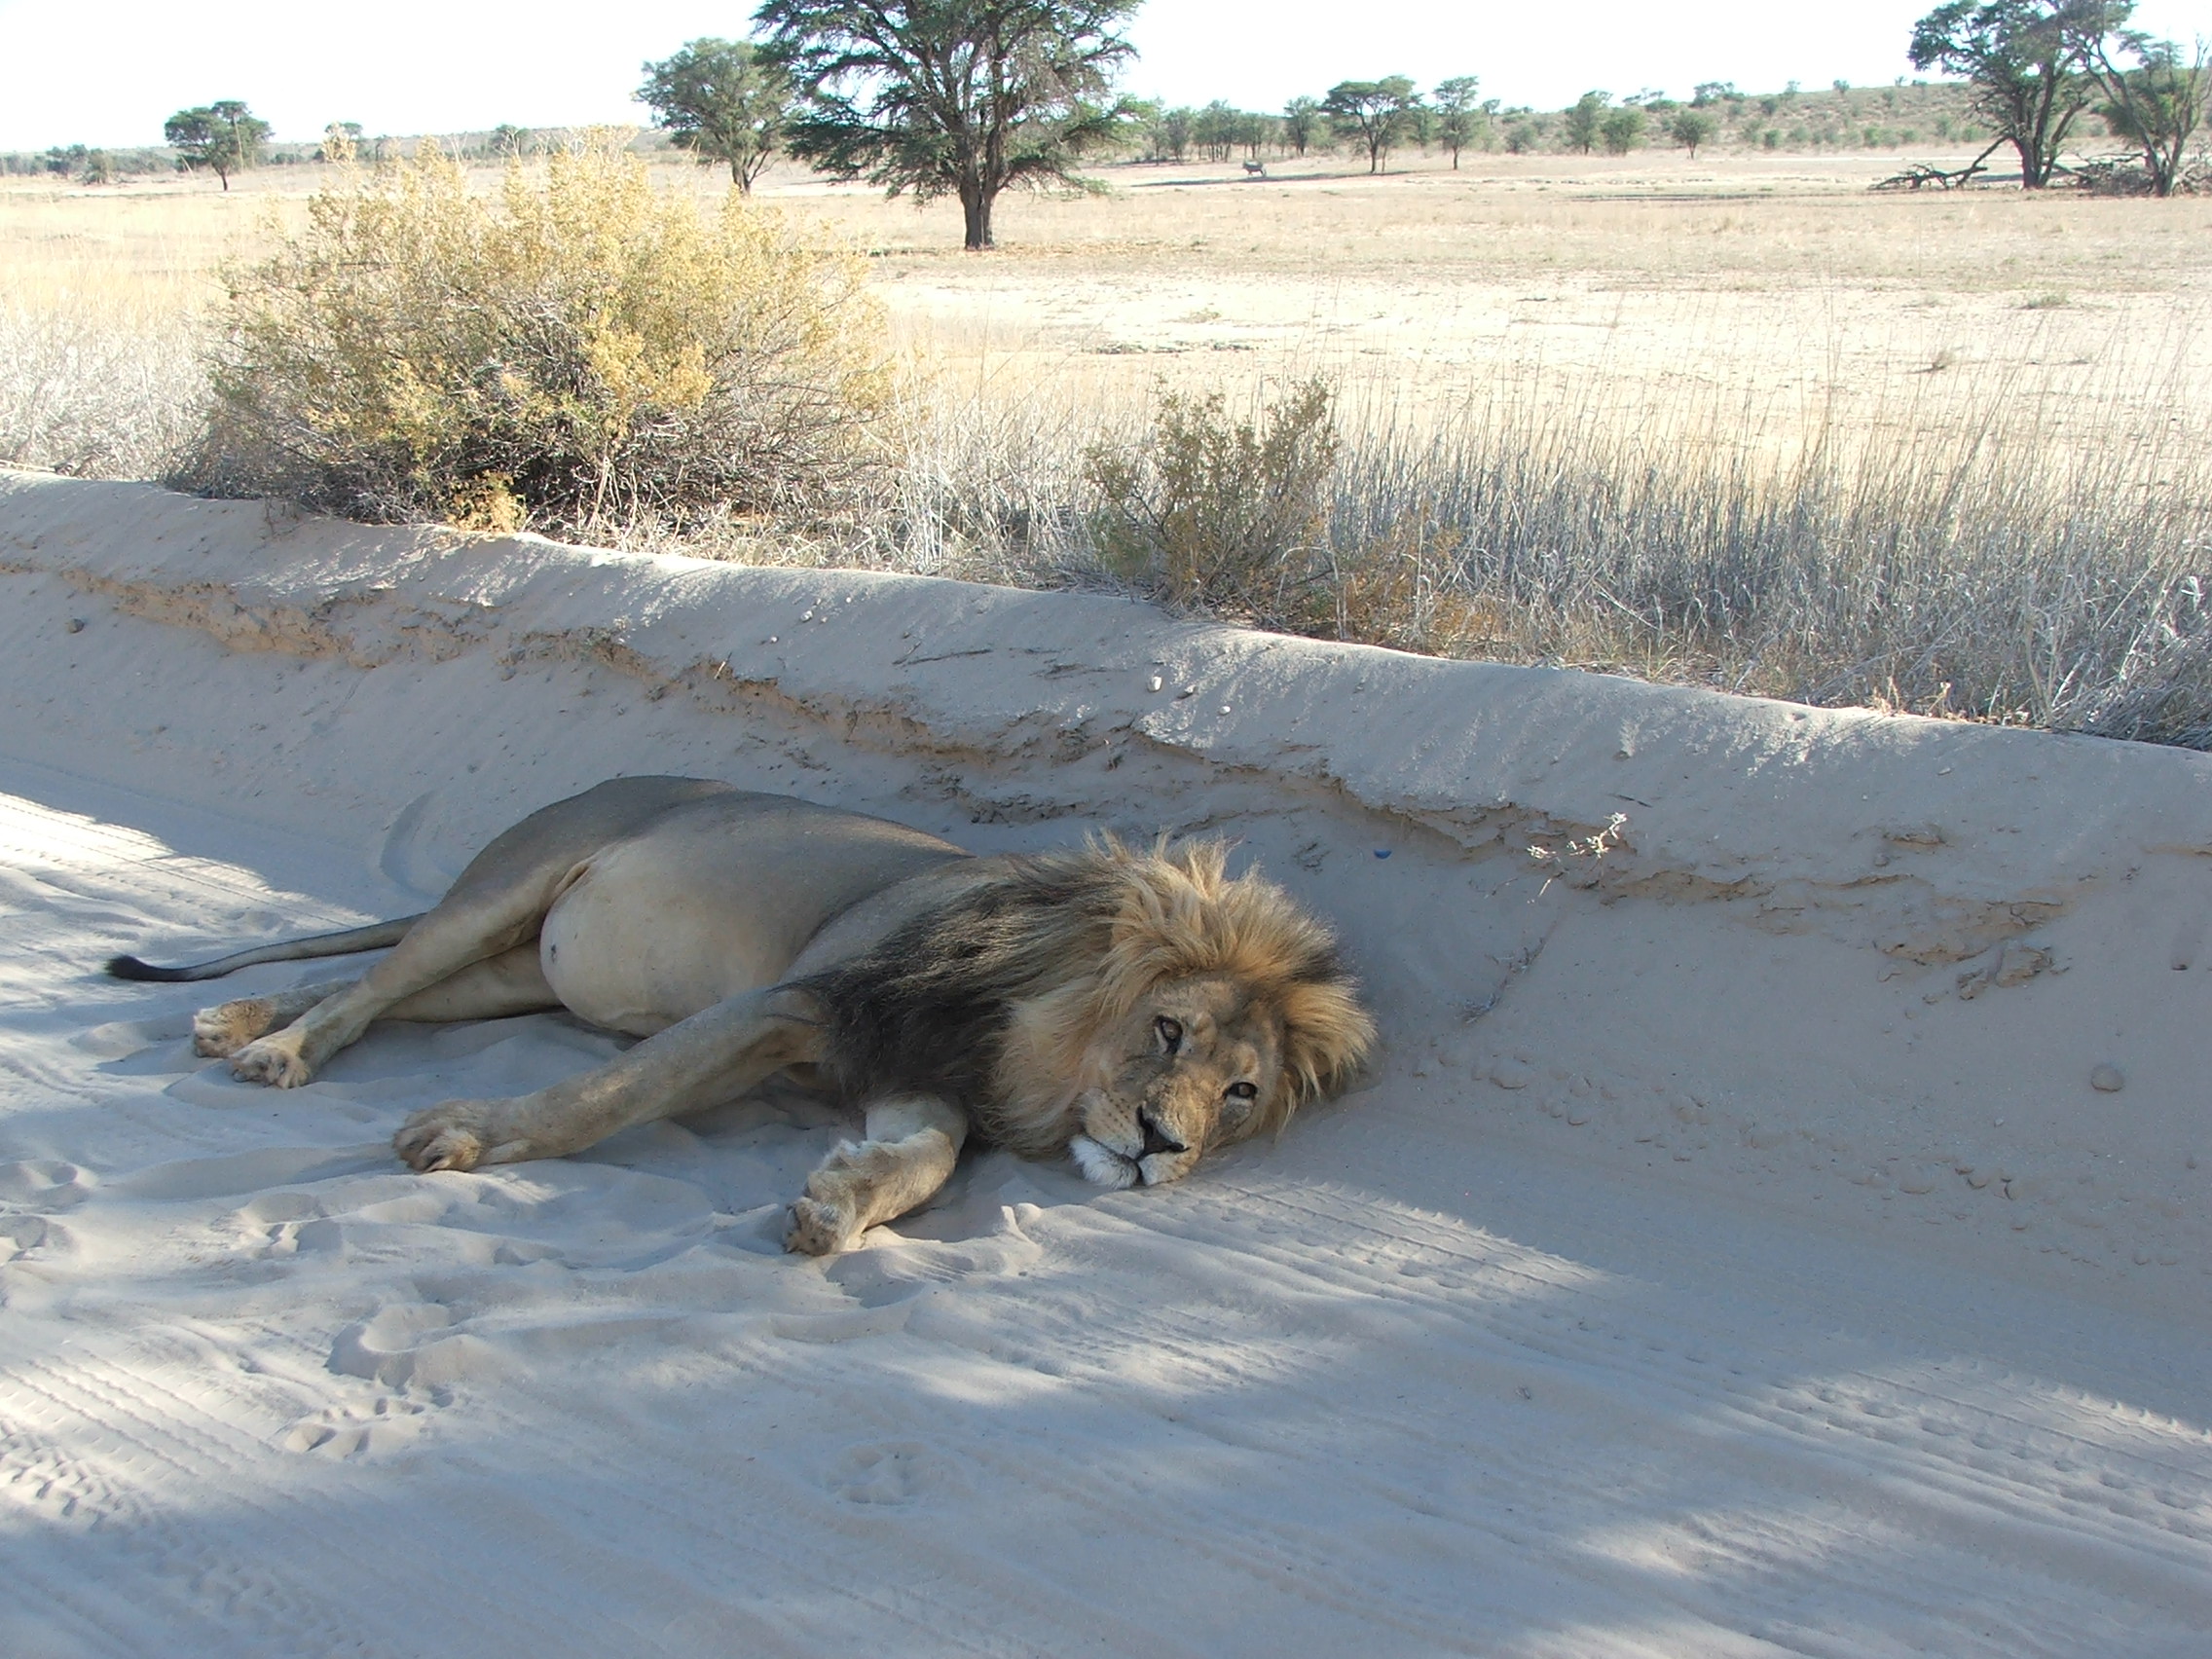 Kalahari Safaris